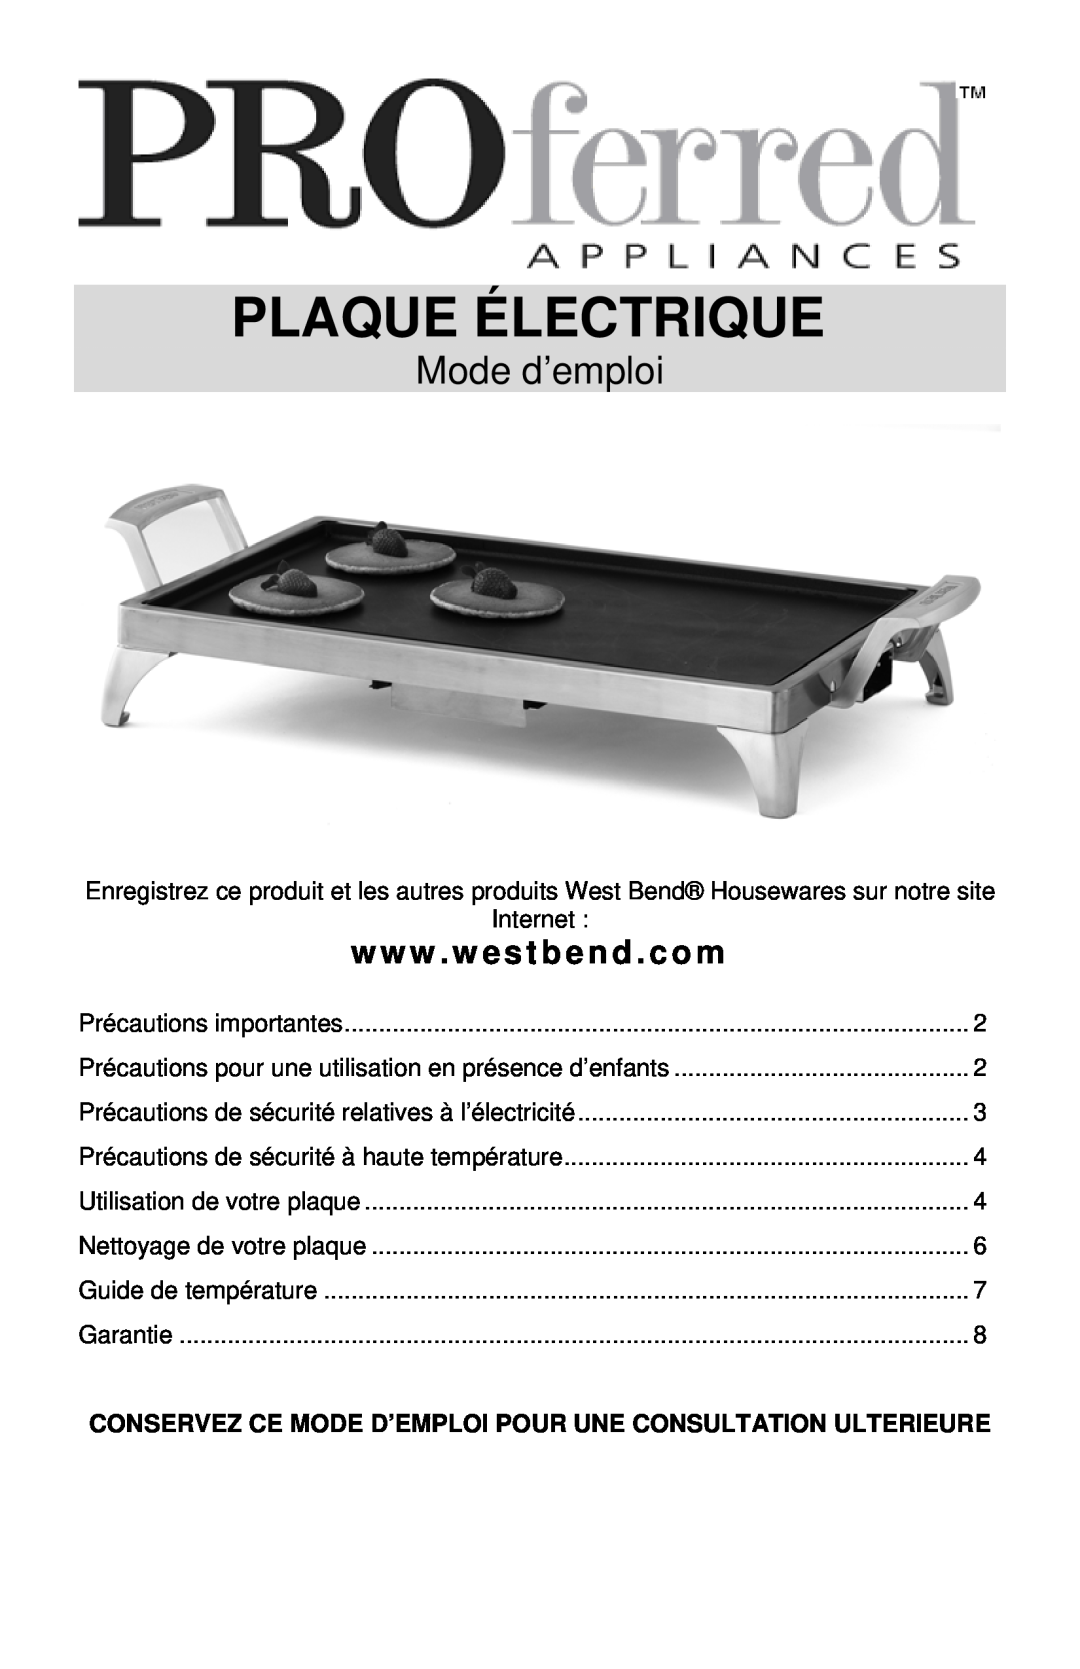 West Bend 79012, L5687 instruction manual Plaque Électrique, Mode d’emploi, www . westbend . com 